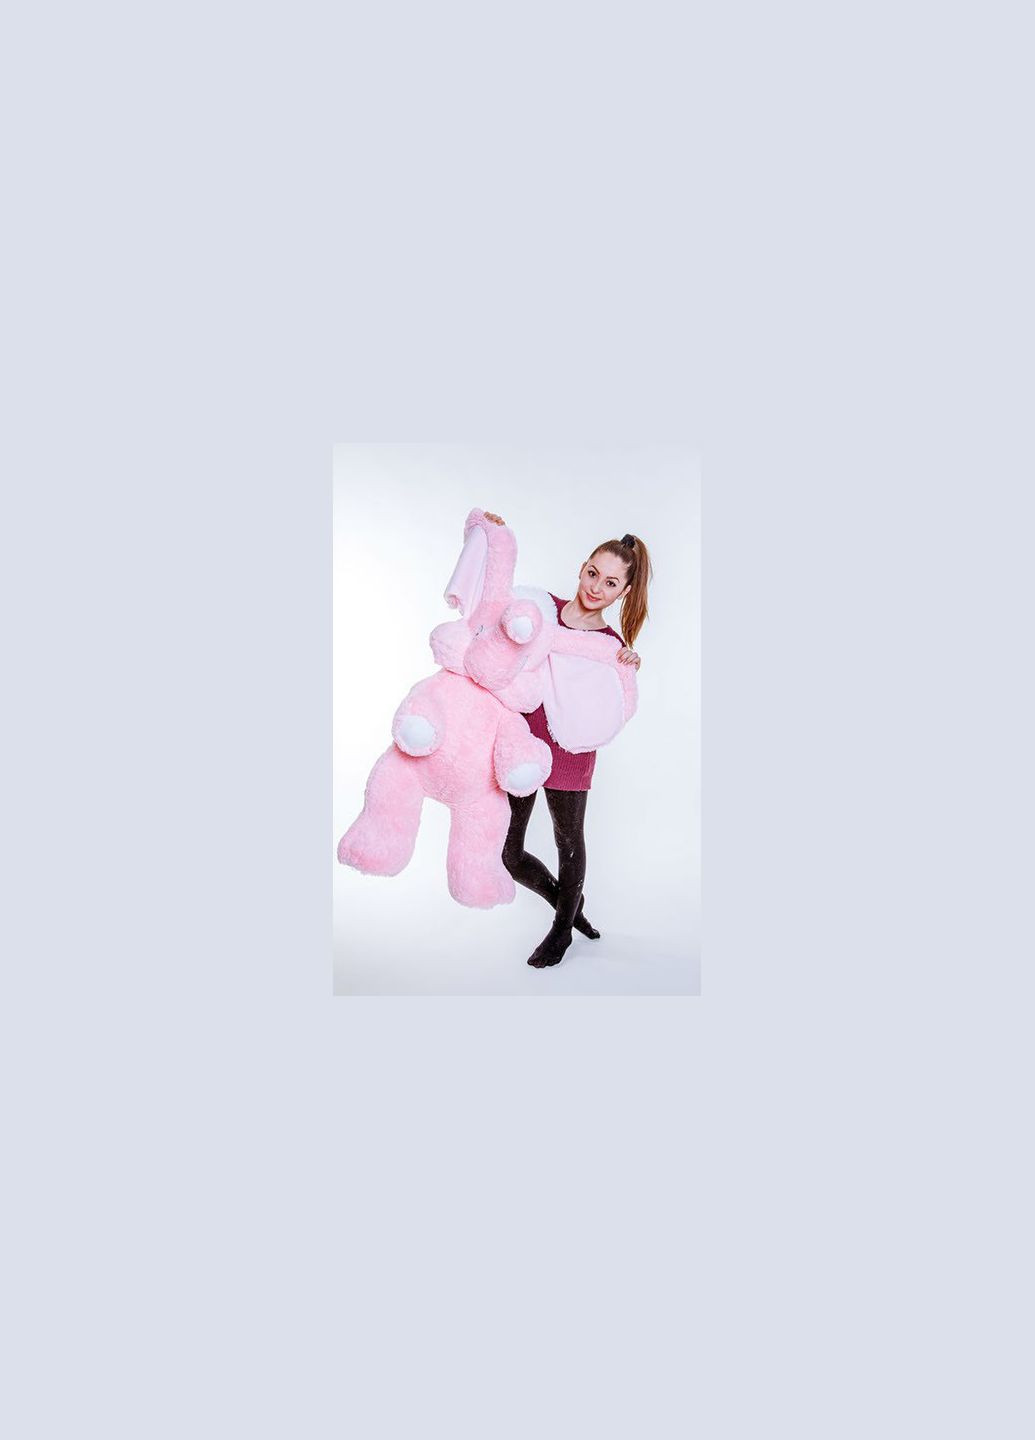 Мягкая игрушка Слоник 80 см розовый Alina (288045177)